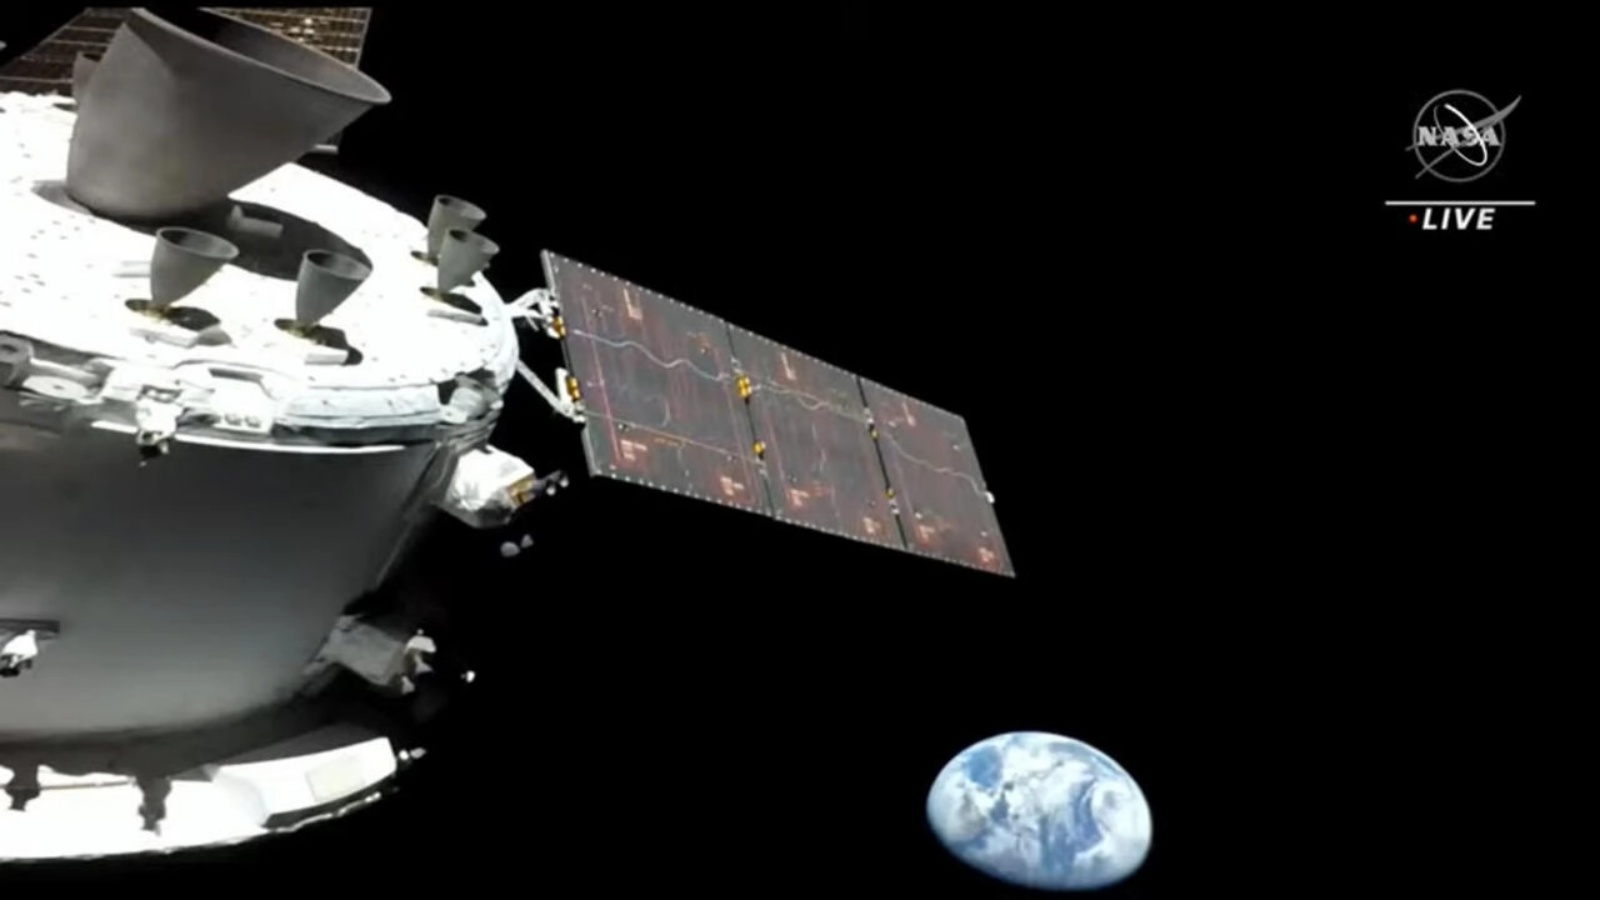 المركبة الفضائية ناسا أوريون، في طريقها إلى القمر